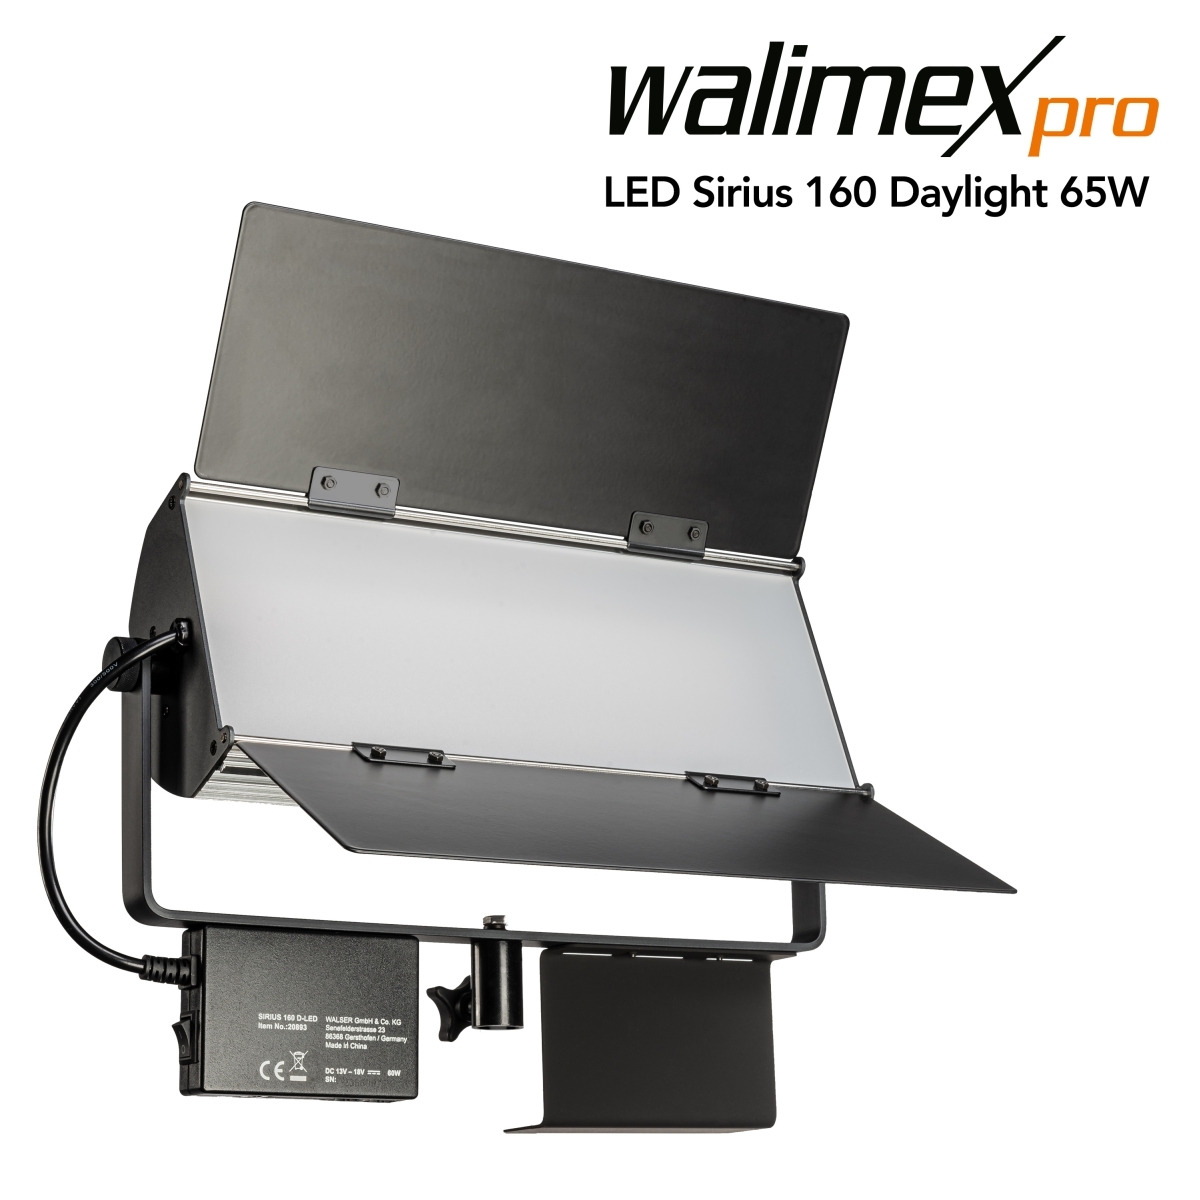 Walimex pro LED Sirius 160 Daylight 65W LED area light